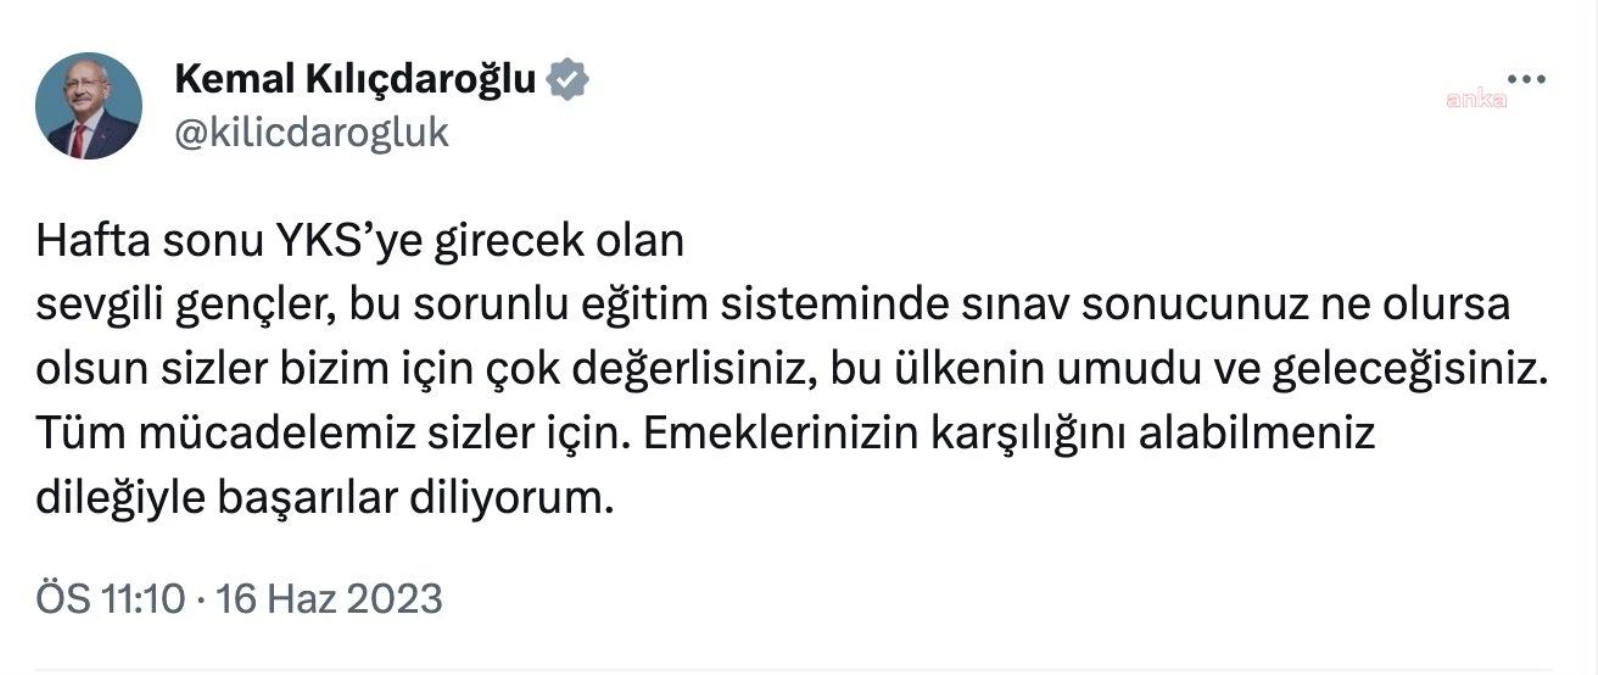 Kılıçdaroğlu, YKS'ye girecek öğrencilere muvaffakiyetler diledi